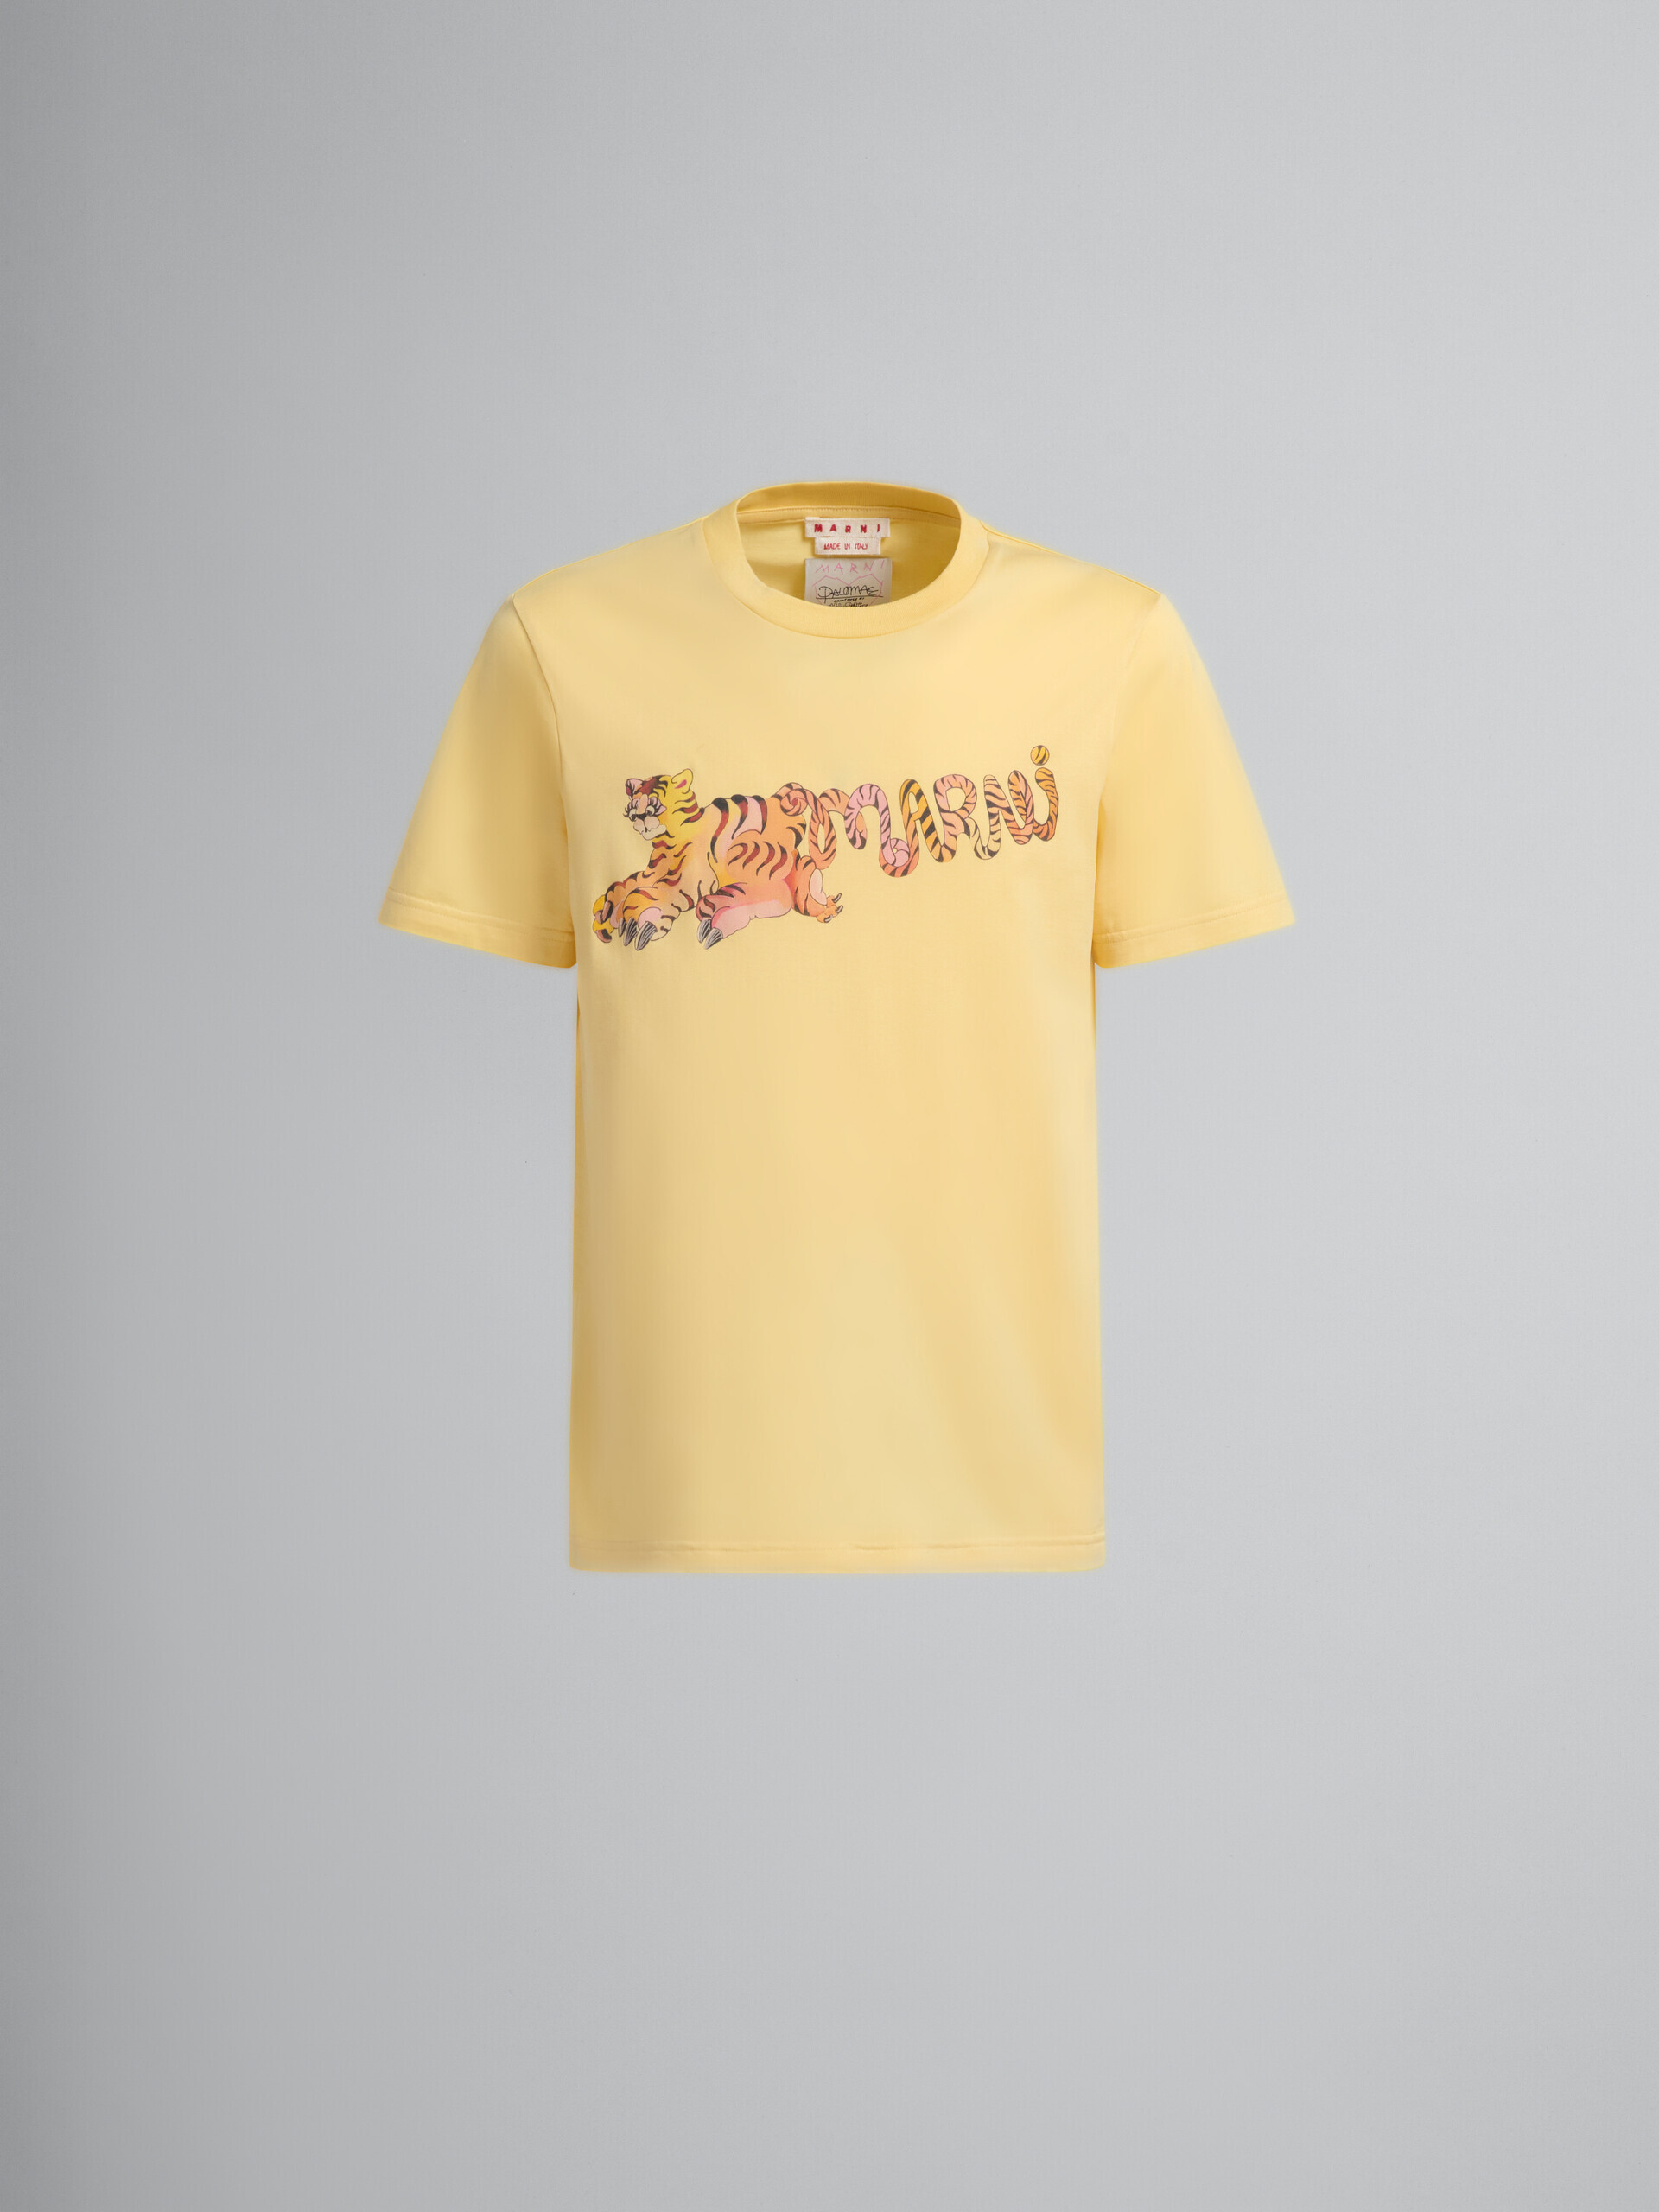 プリント入りイエローのオーガニックジャージー製レギュラーフィットTシャツ - Tシャツ - Image 2